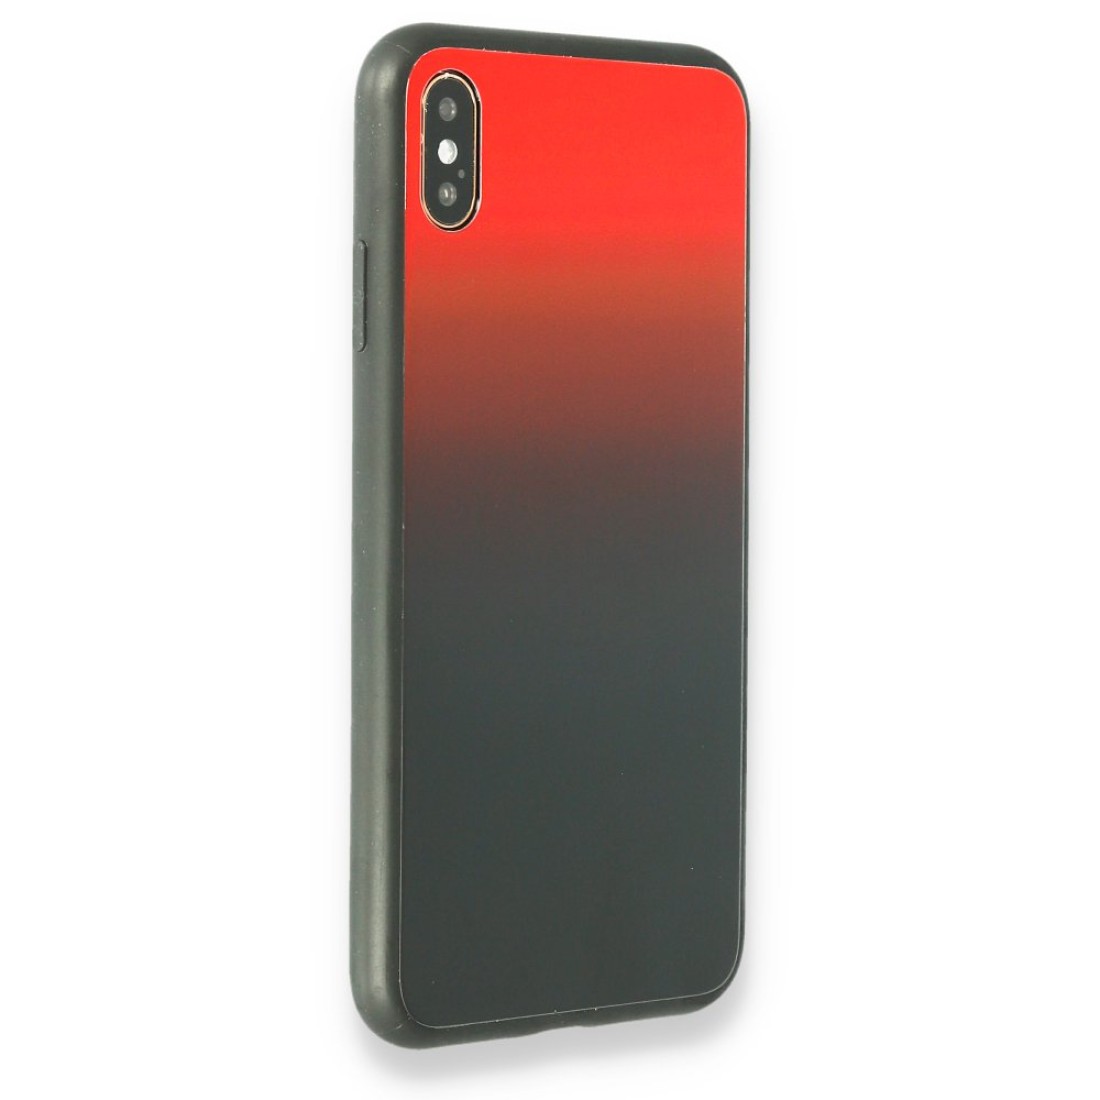 Apple iPhone XS Max Kılıf Grady Silikon - Kırmızı-Siyah